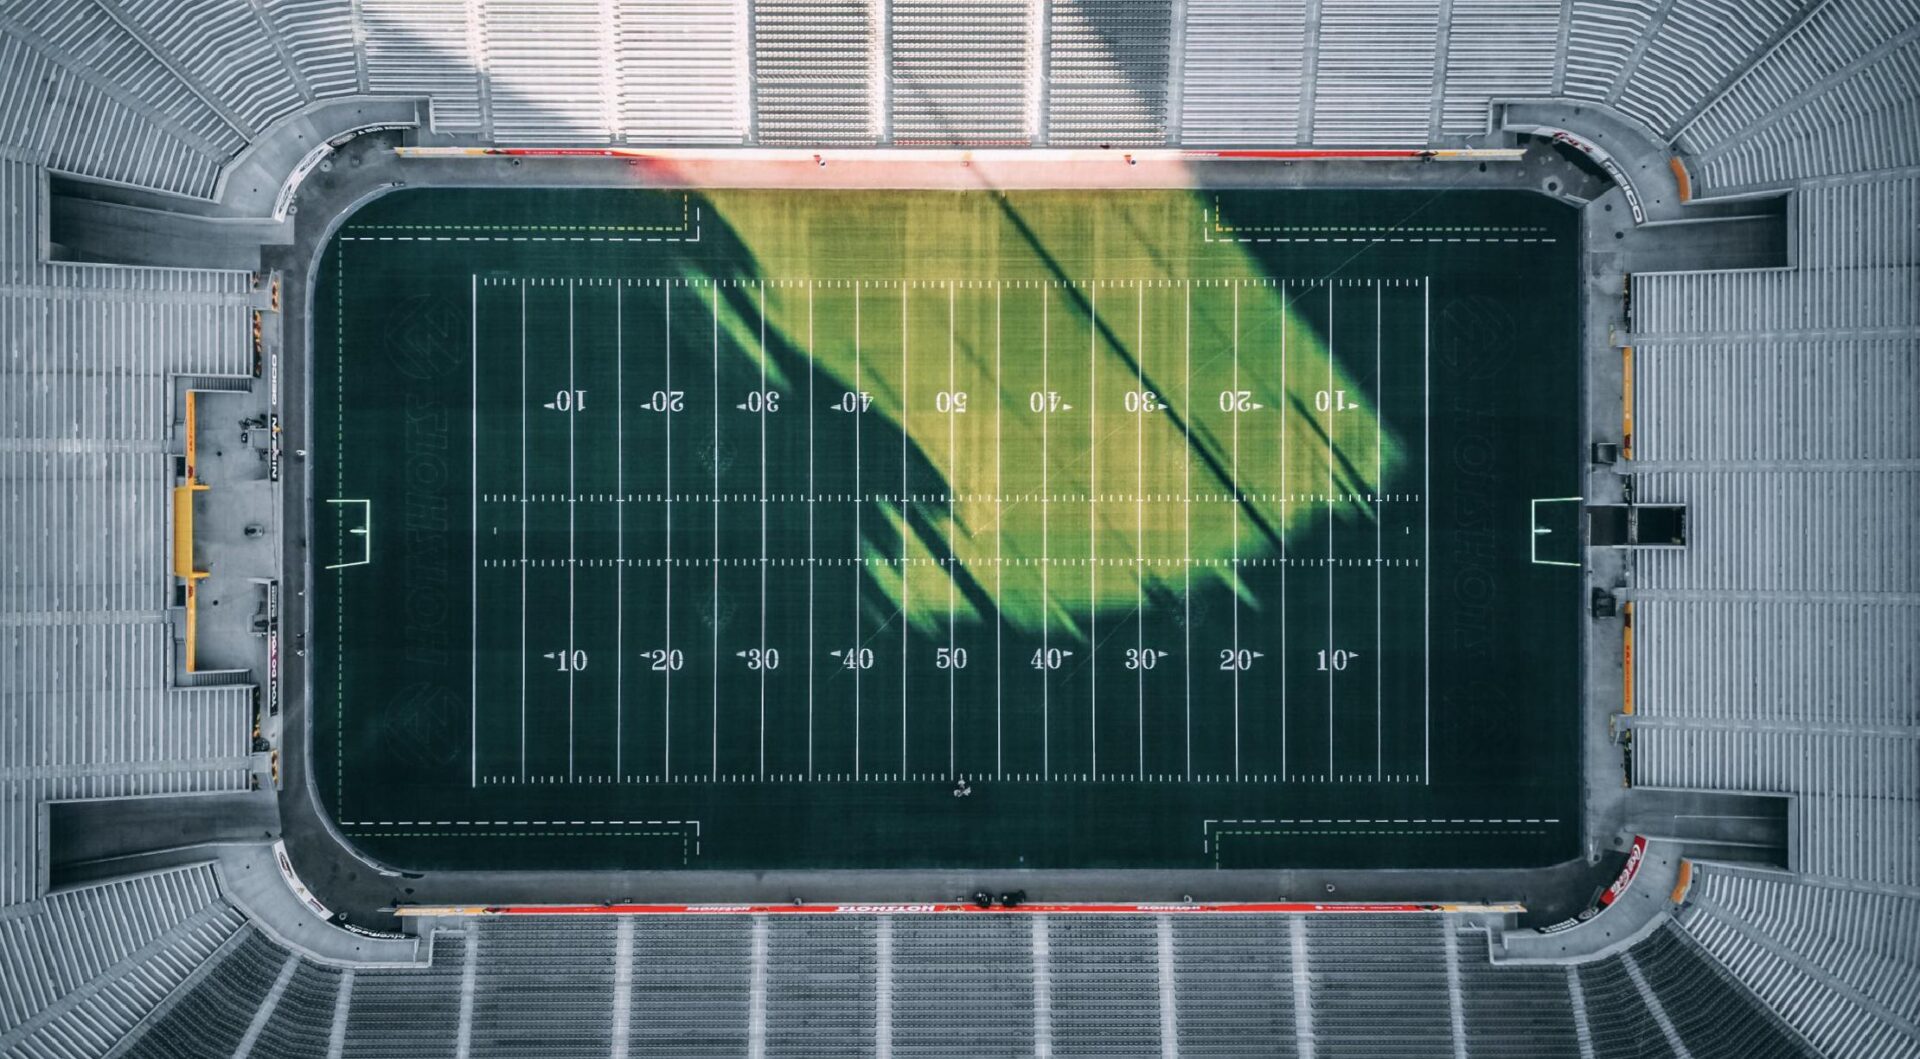 An overhead shot of an empty football stadium